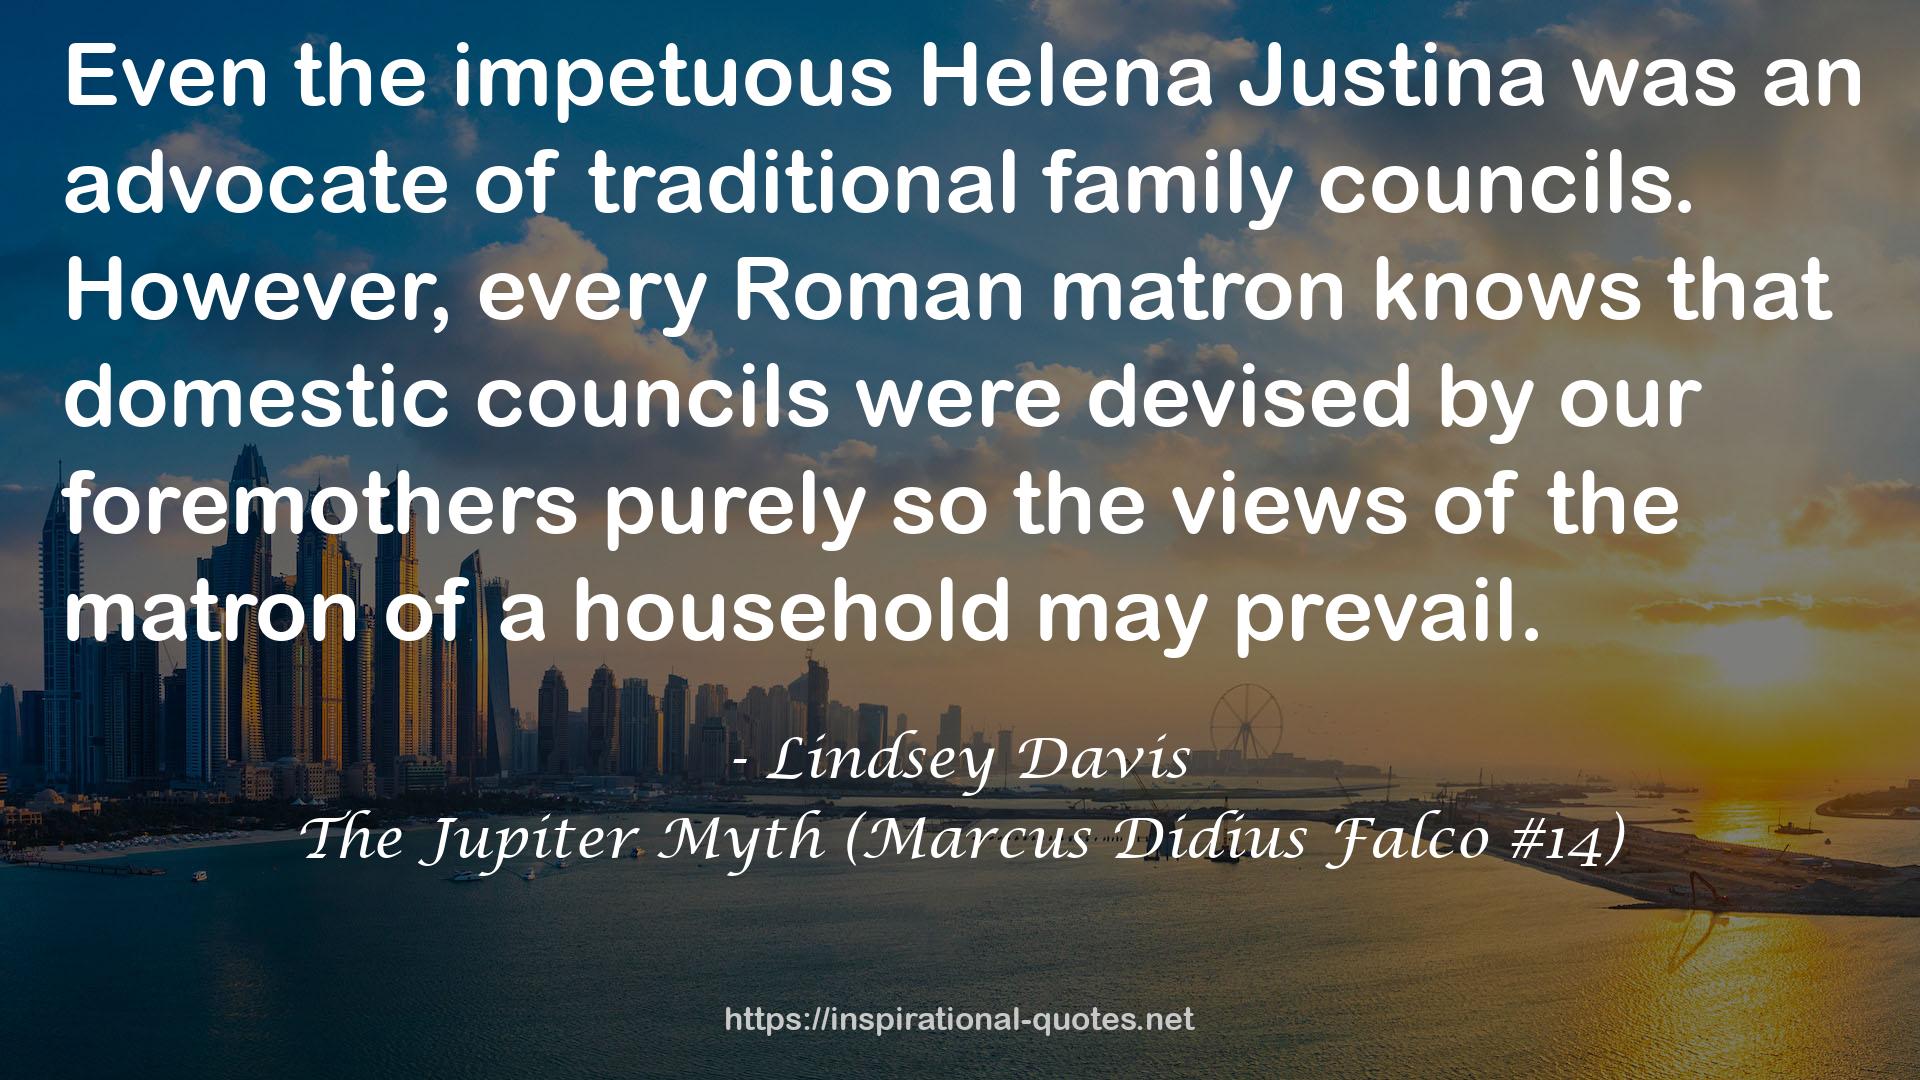 The Jupiter Myth (Marcus Didius Falco #14) QUOTES